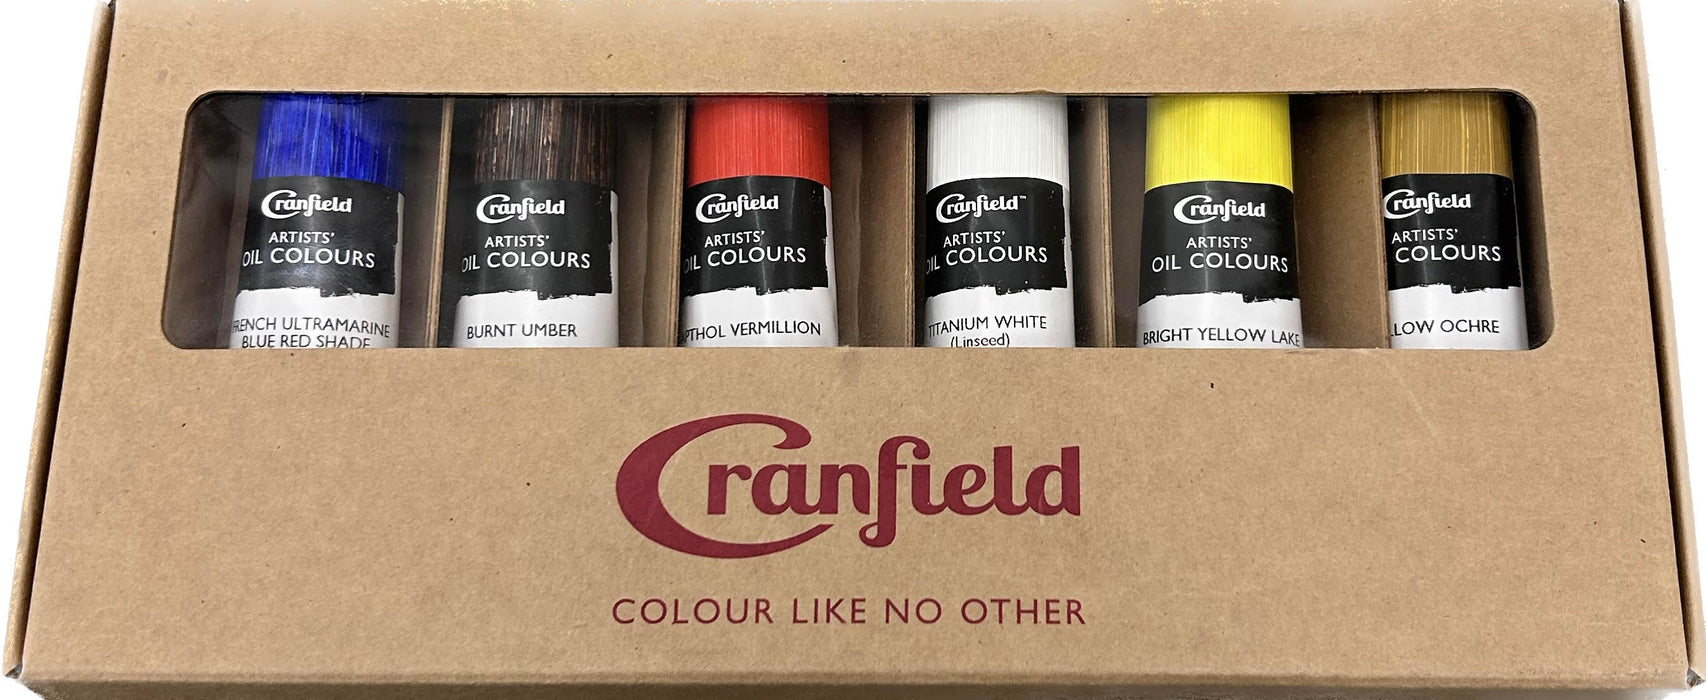 Cranfield Artists Oil Colour Set